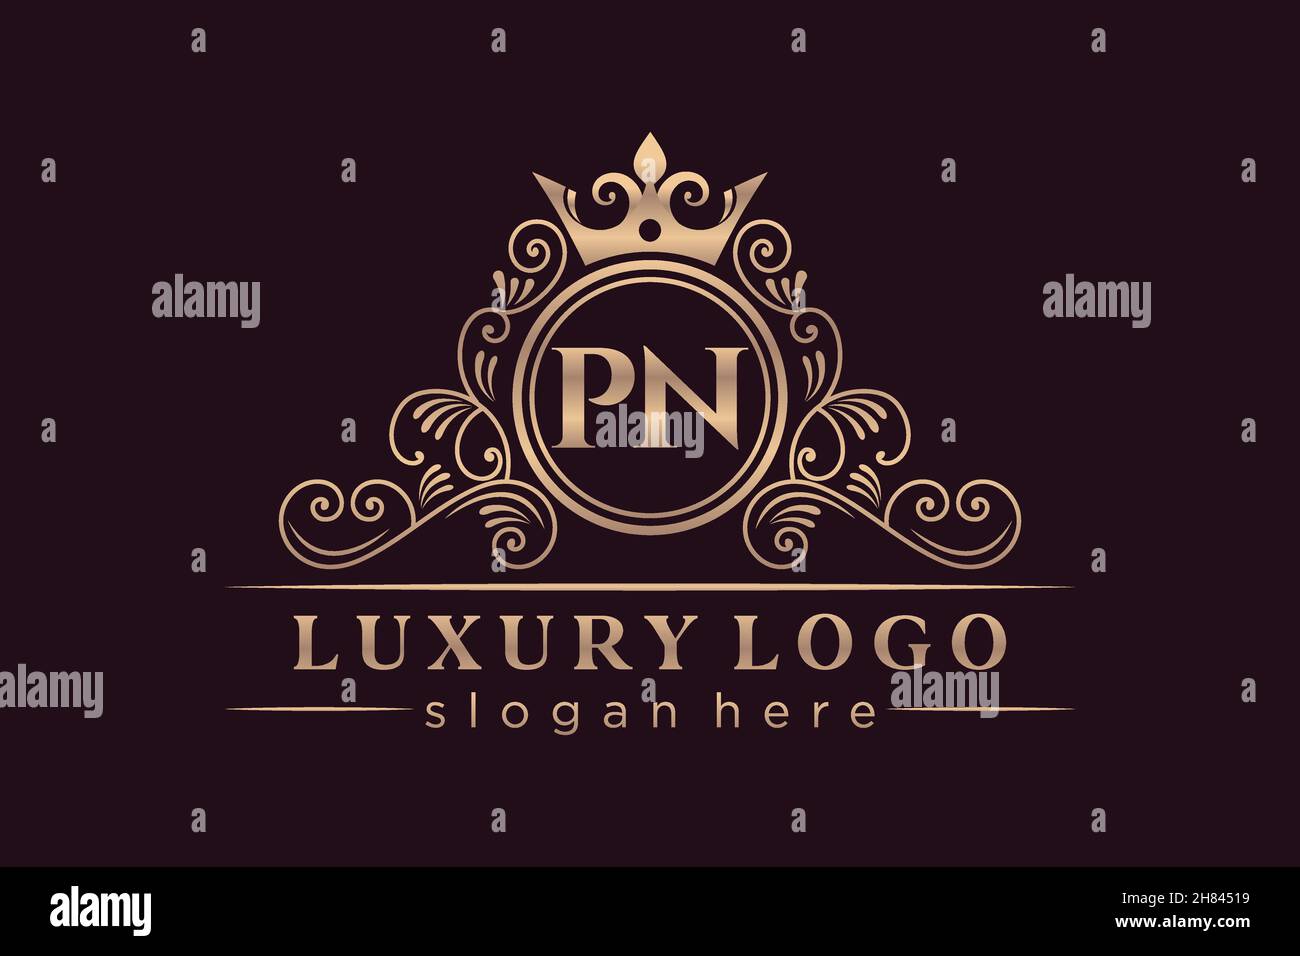 PN Initial Letter Gold calligraphic feminine floral hand drawn heraldic monogram antique vintage style luxury logo design Premium Stock Vector